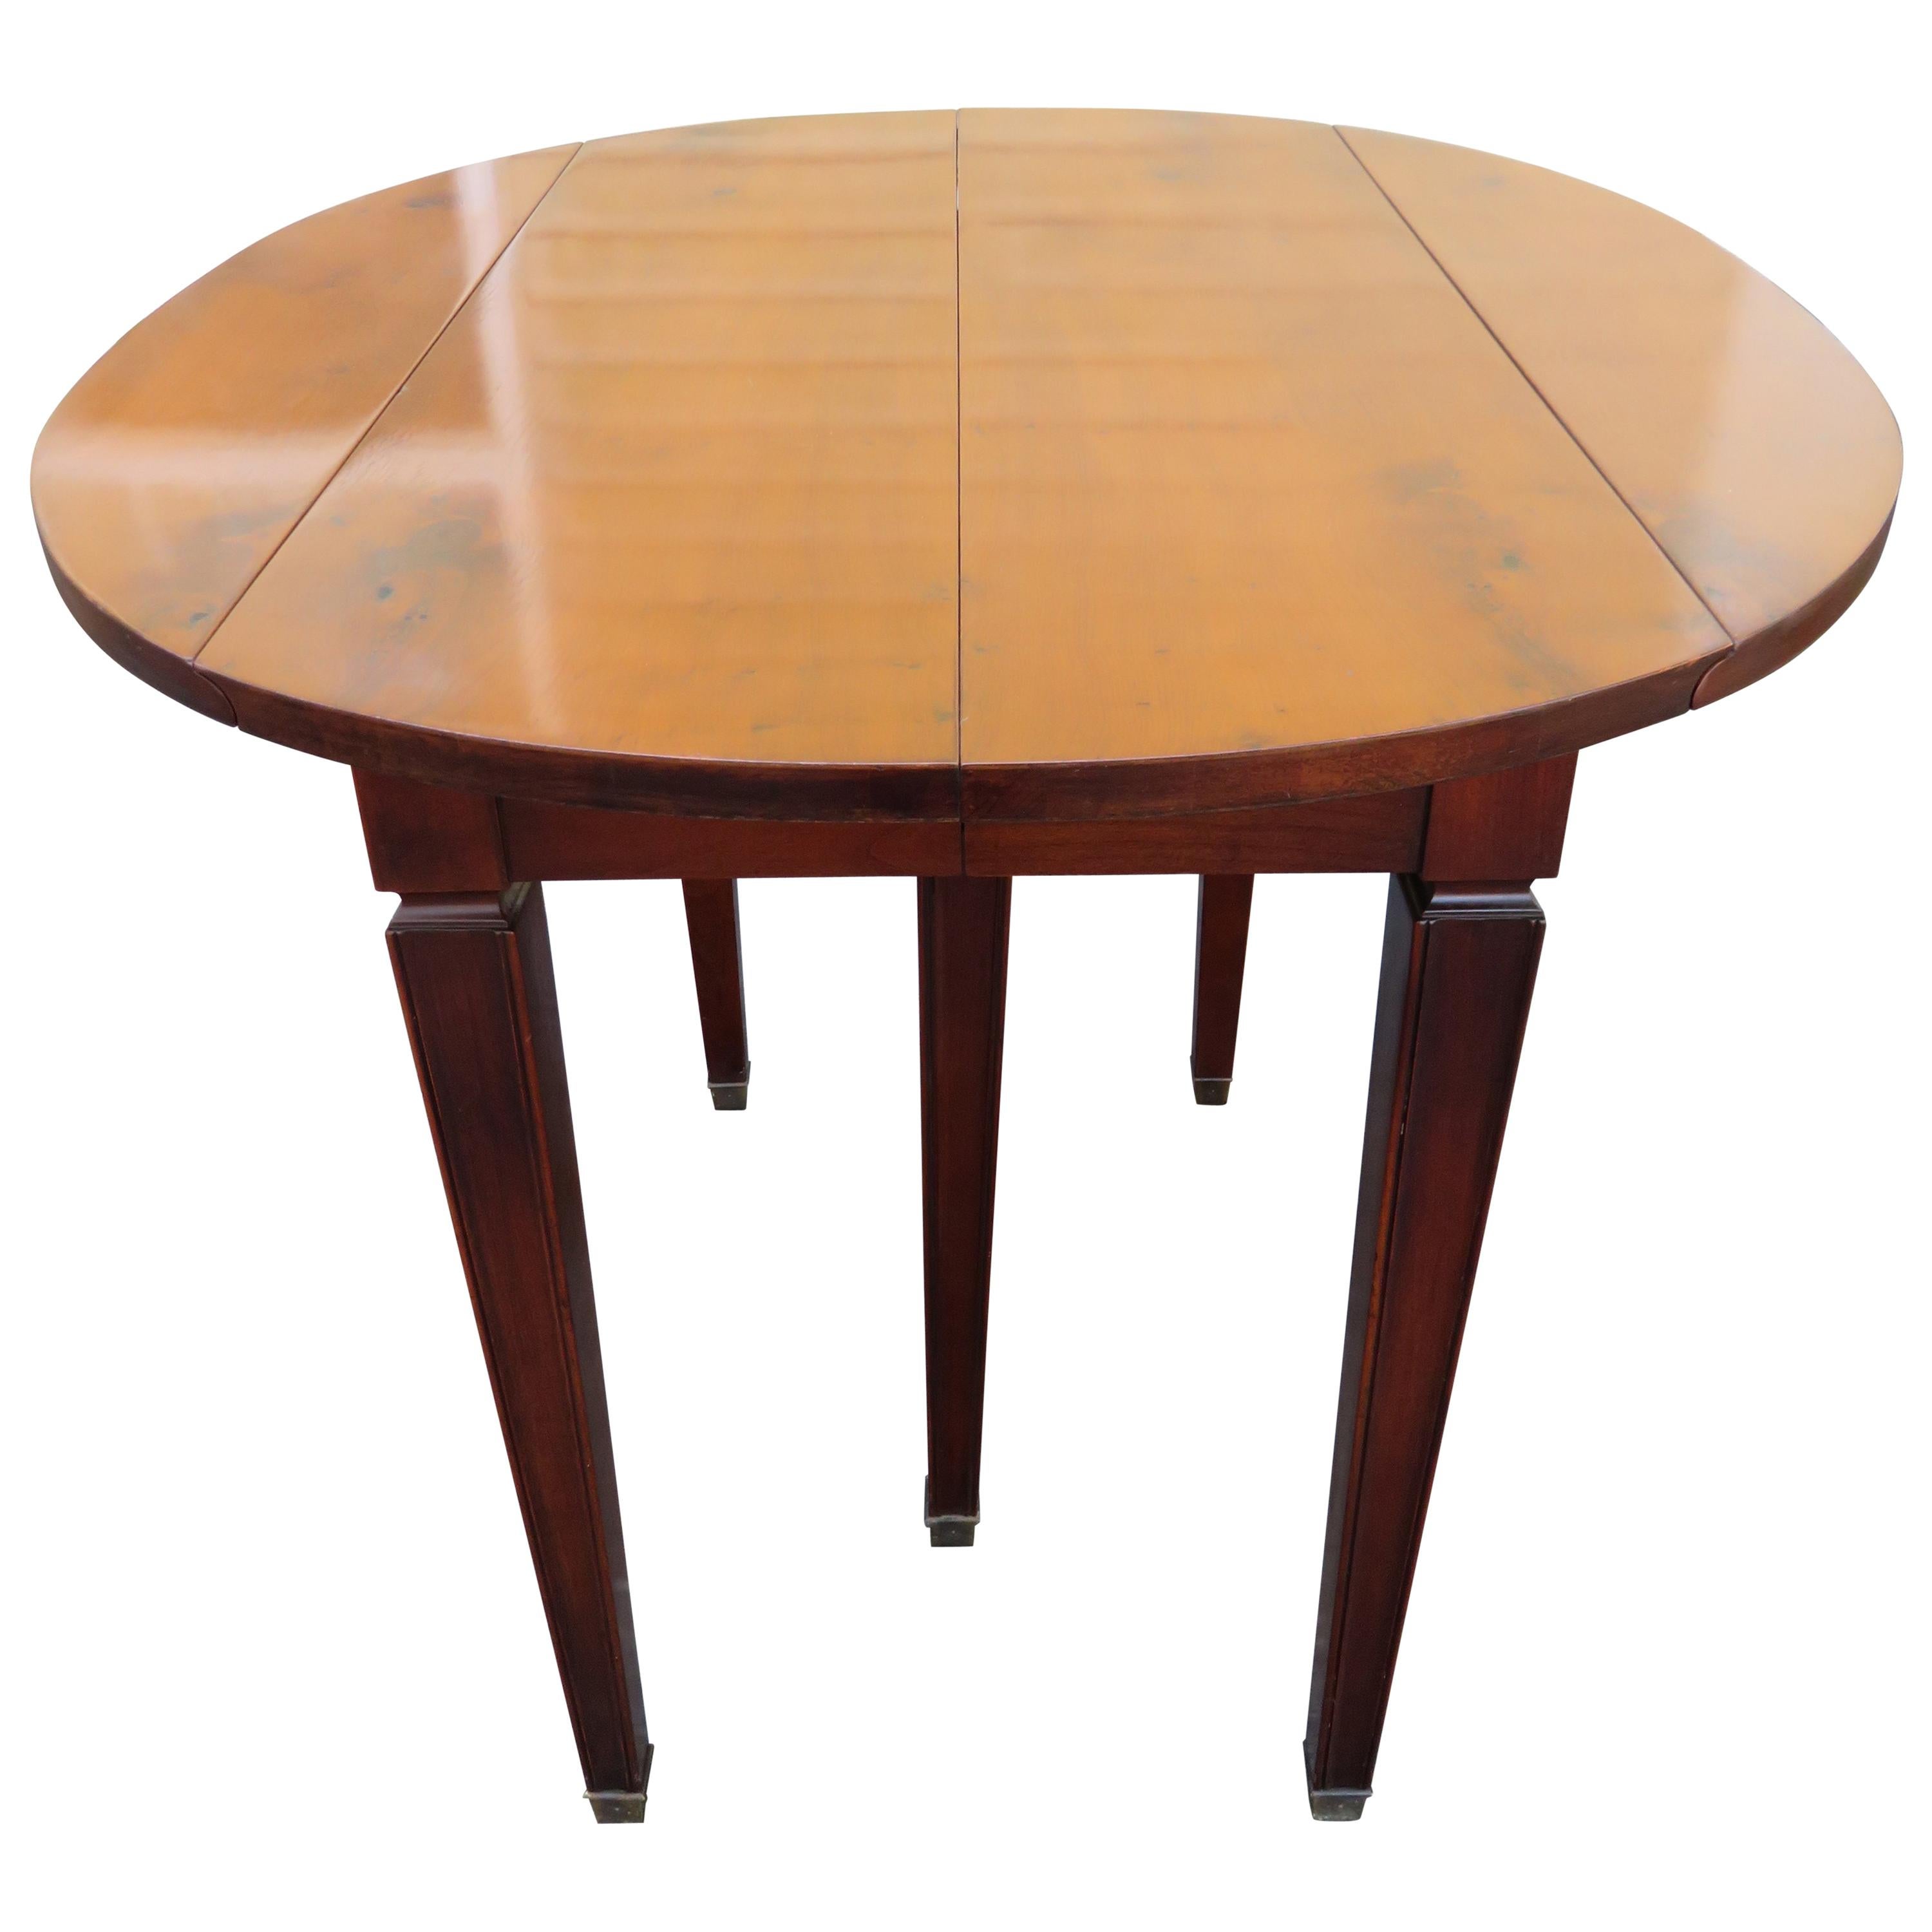 Wonderful Widdicomb Petite Drop Leaf Dining Table 4 Leaves Mid-Century Modern For Sale